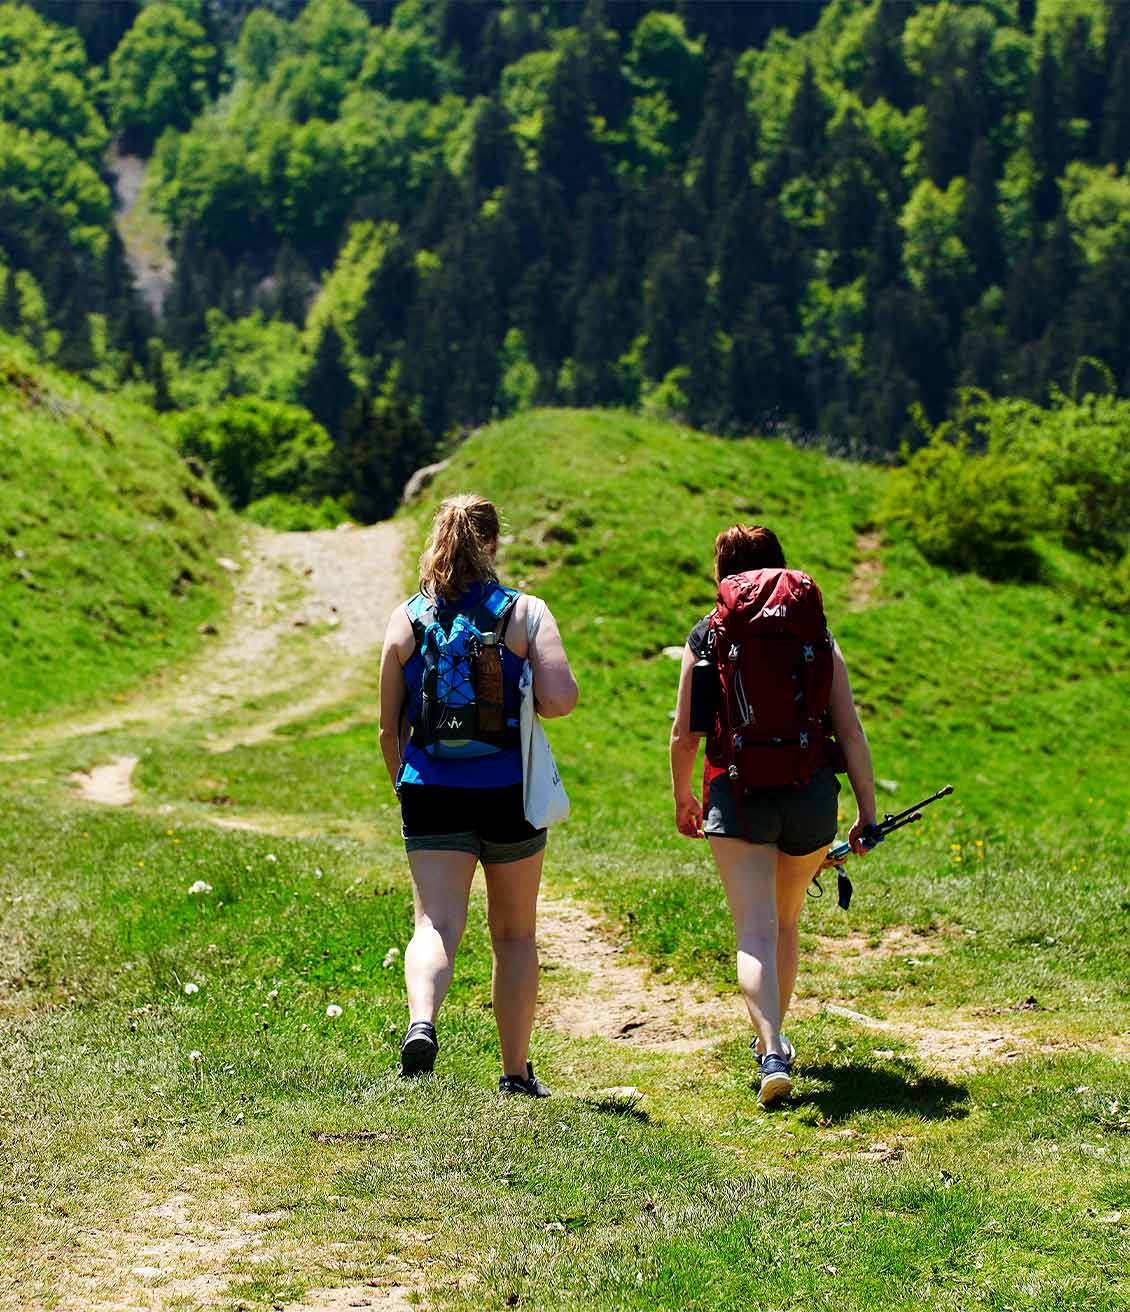 2 jeunes femmes qui partent en randonnée, sacs sur le doc et infusions froides dans les sacs